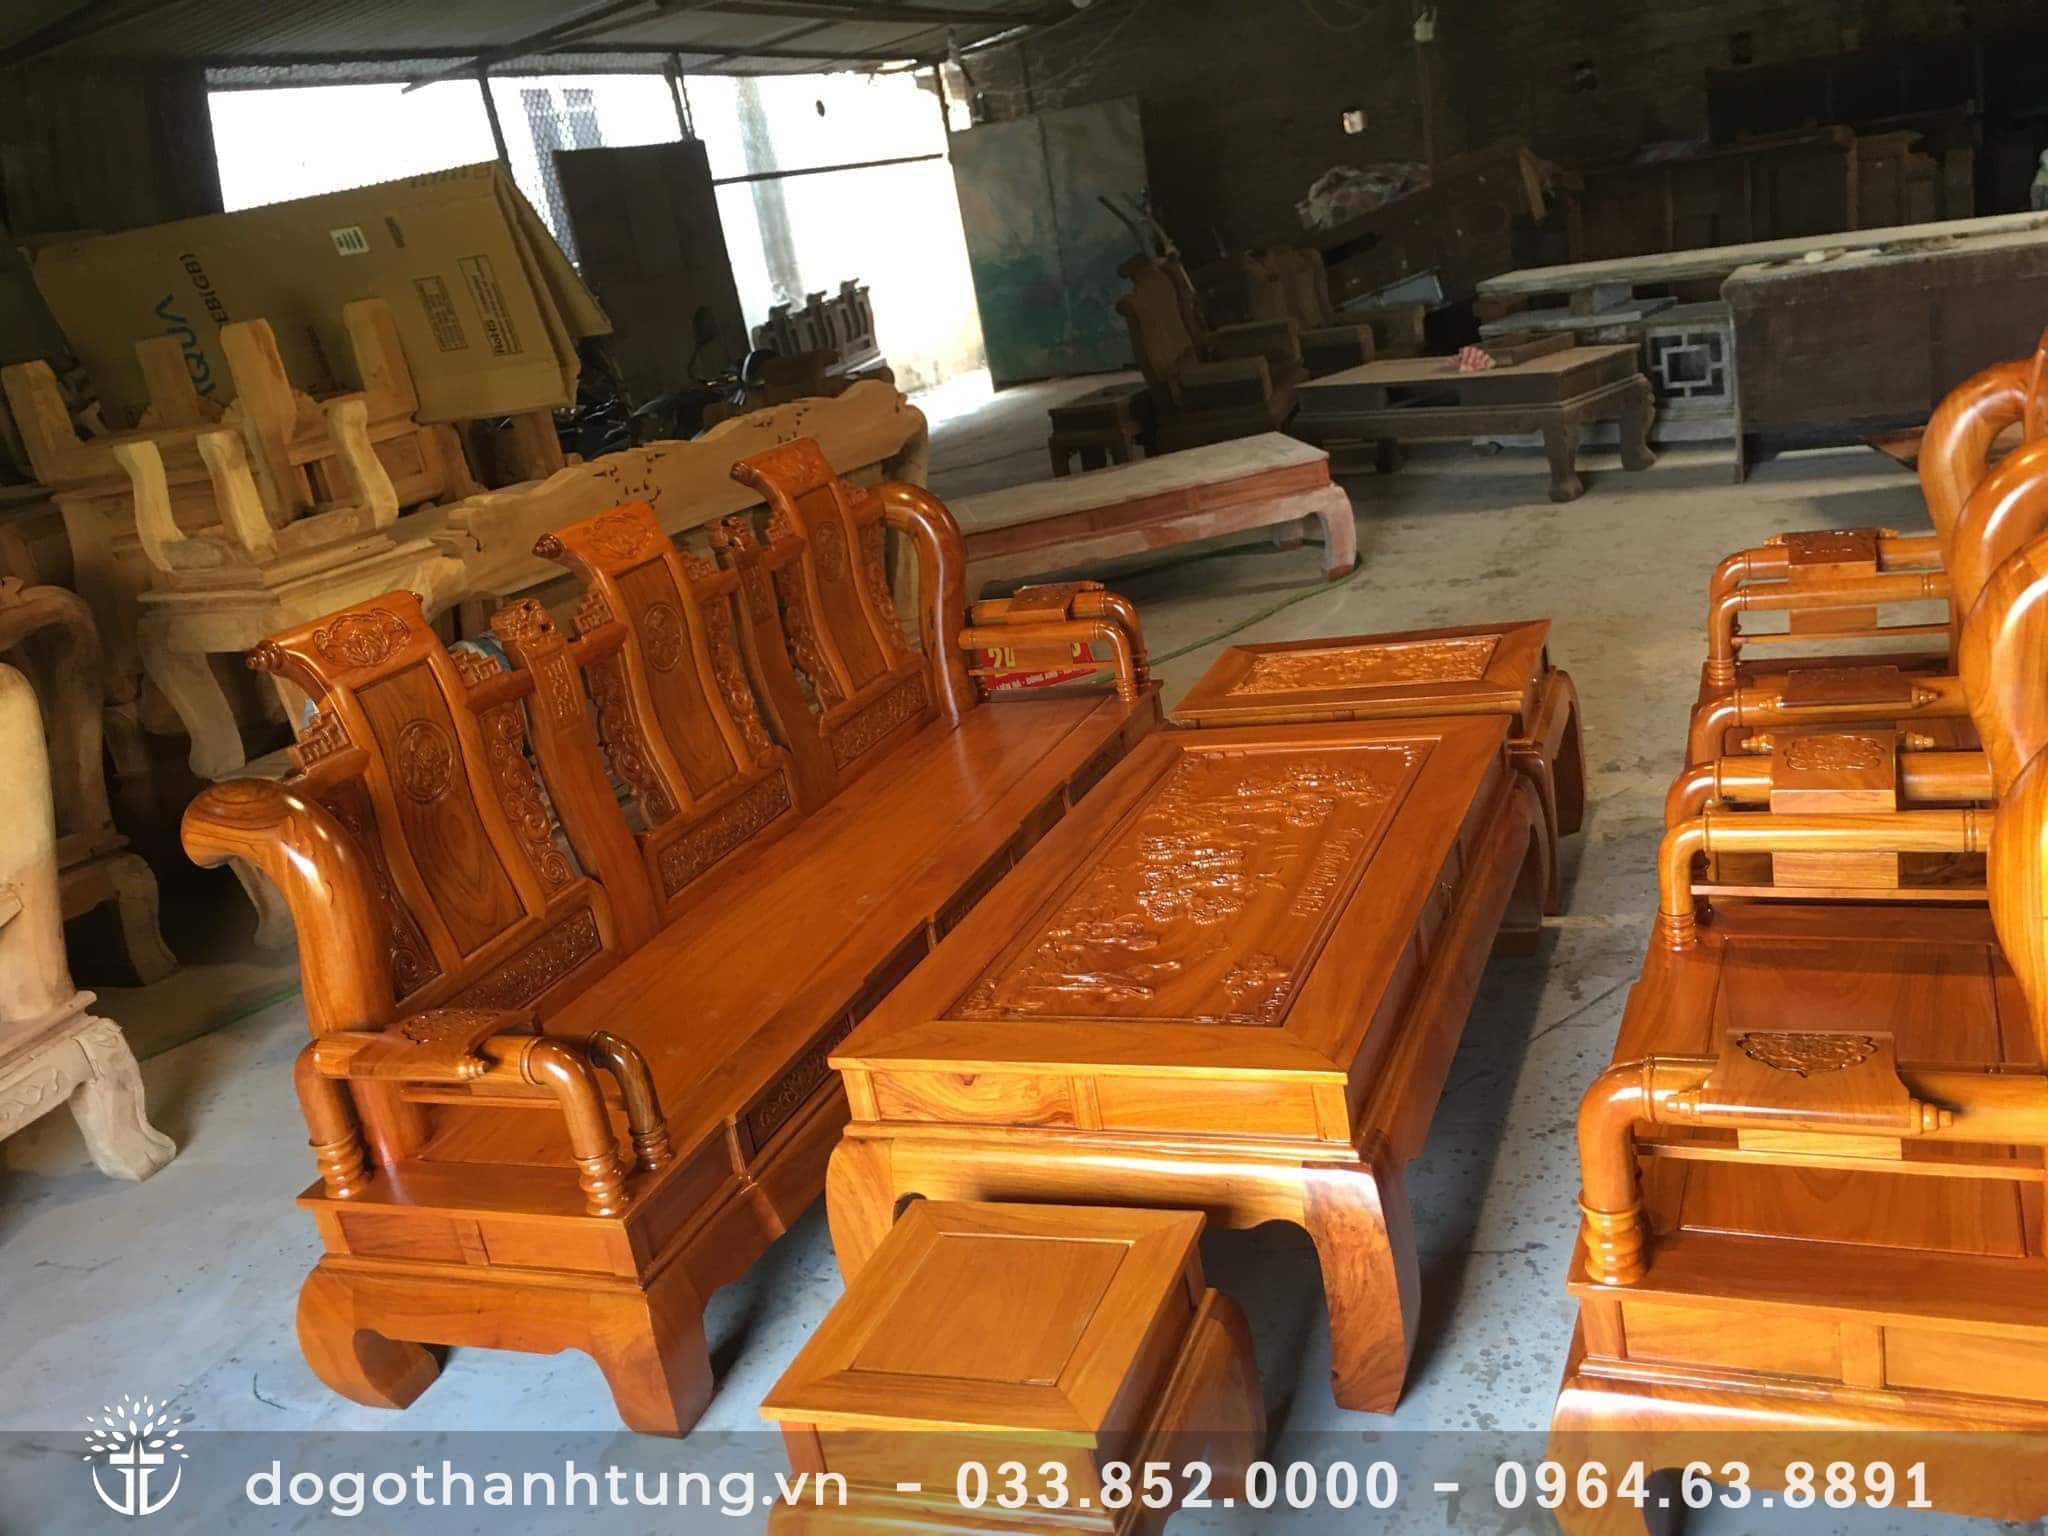 Bộ bàn ghế 6 món Tần Thủy Hoàng cột 12 gỗ Gõ đỏ phun màu trần cực ...